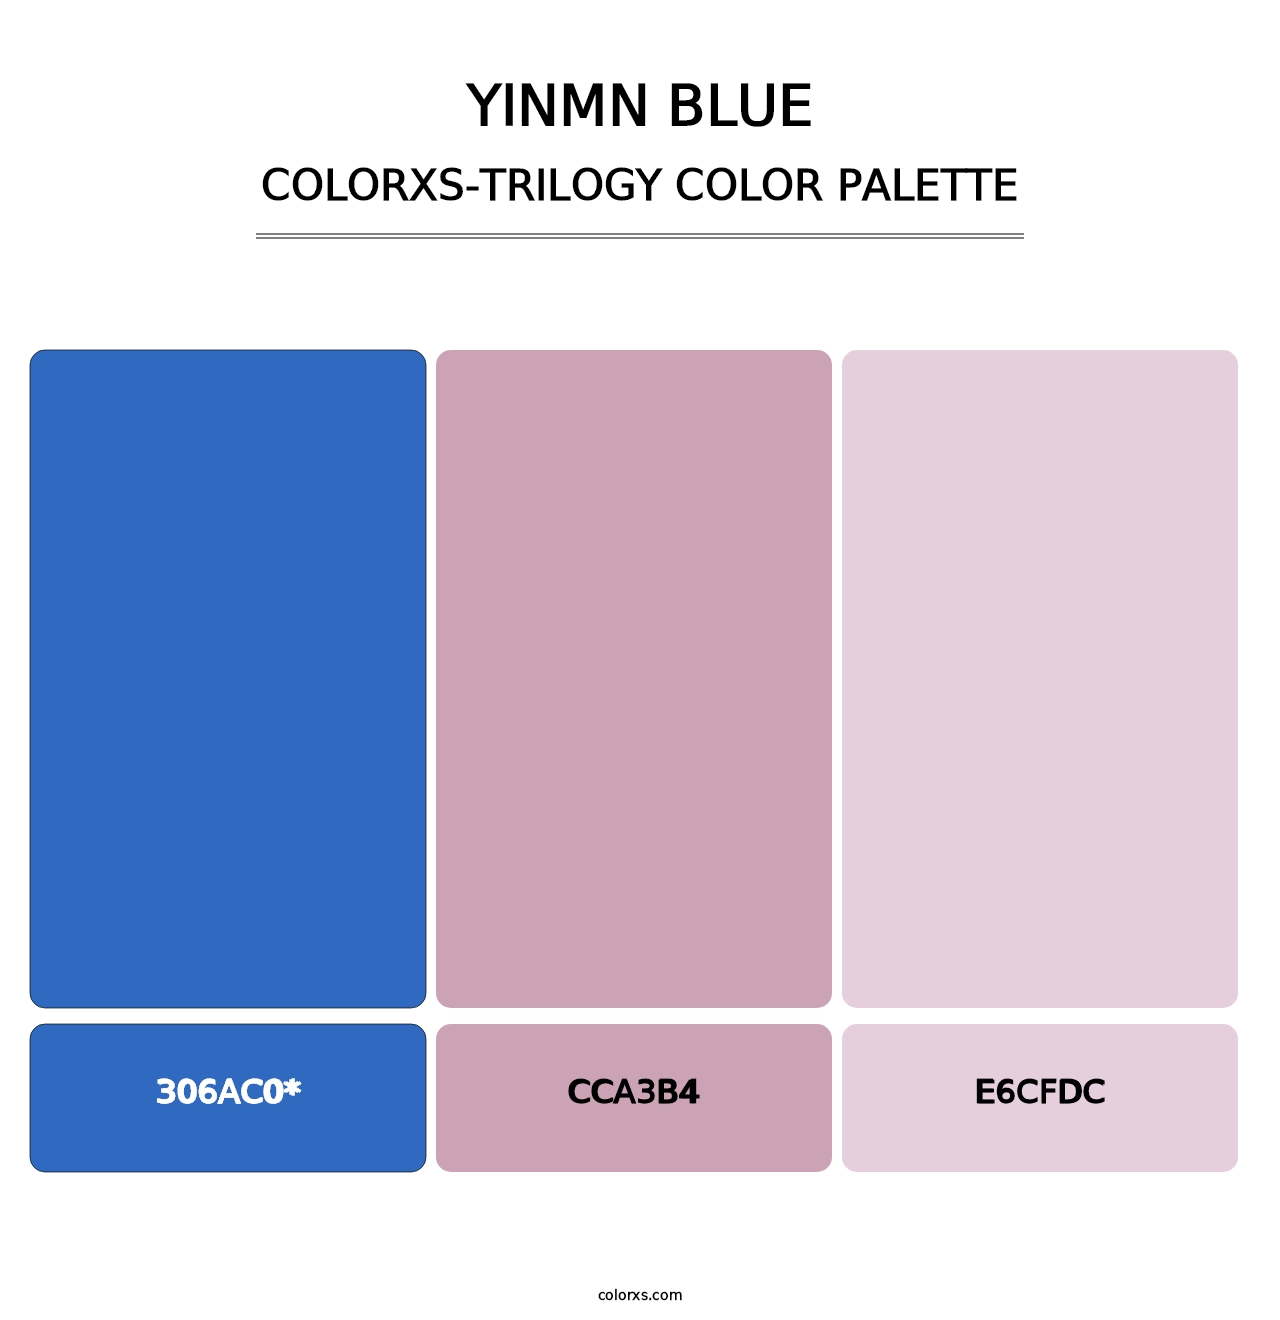 YInMn Blue - Colorxs Trilogy Palette